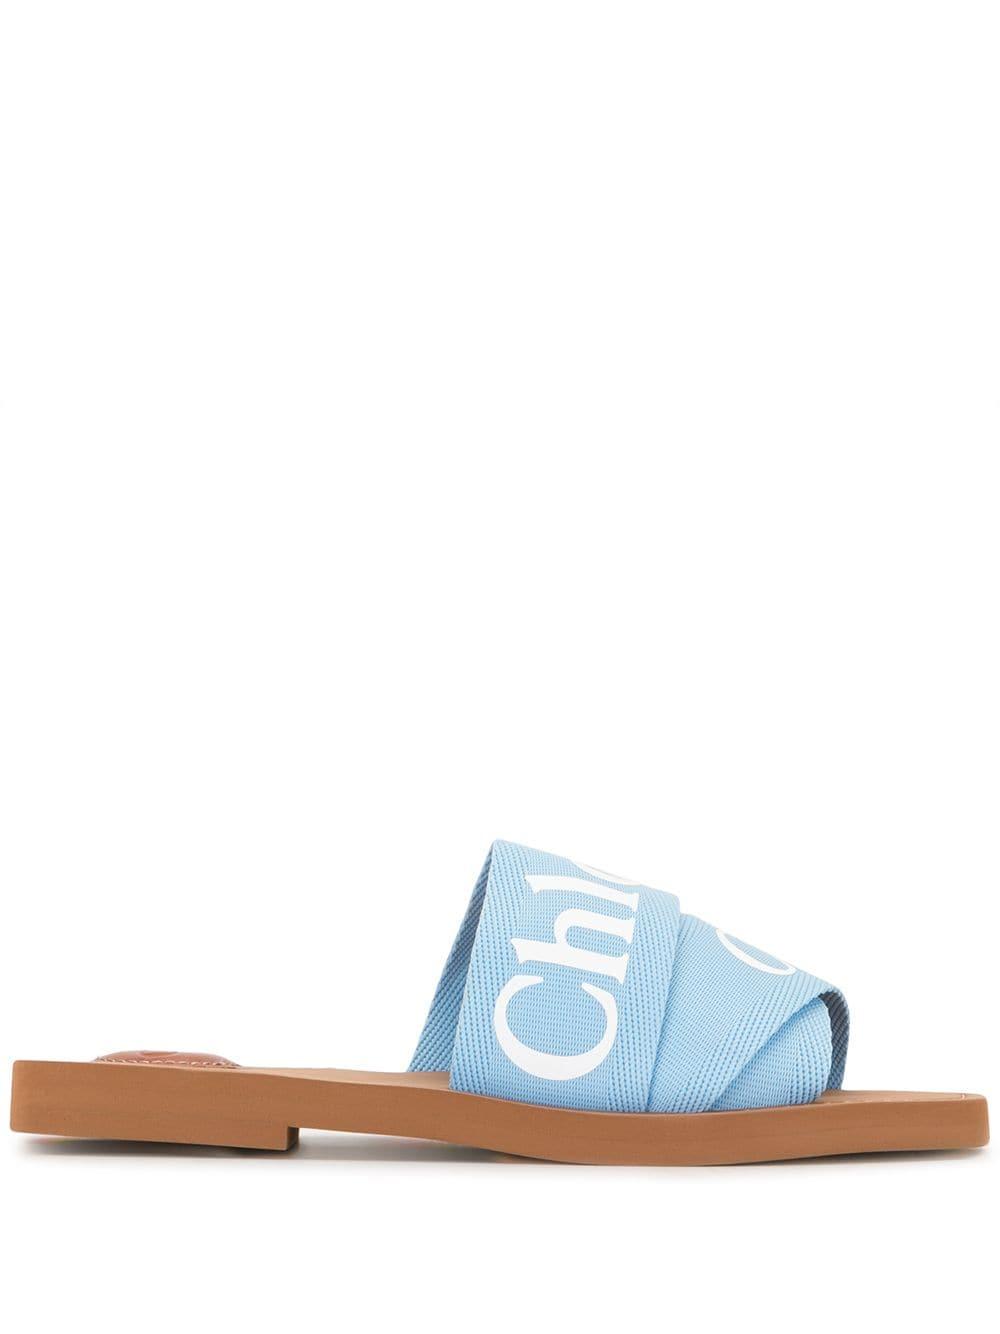 Chloé Baumwolle 'Woody' Sandalen mit Logo-Riemen in Blau - Lyst